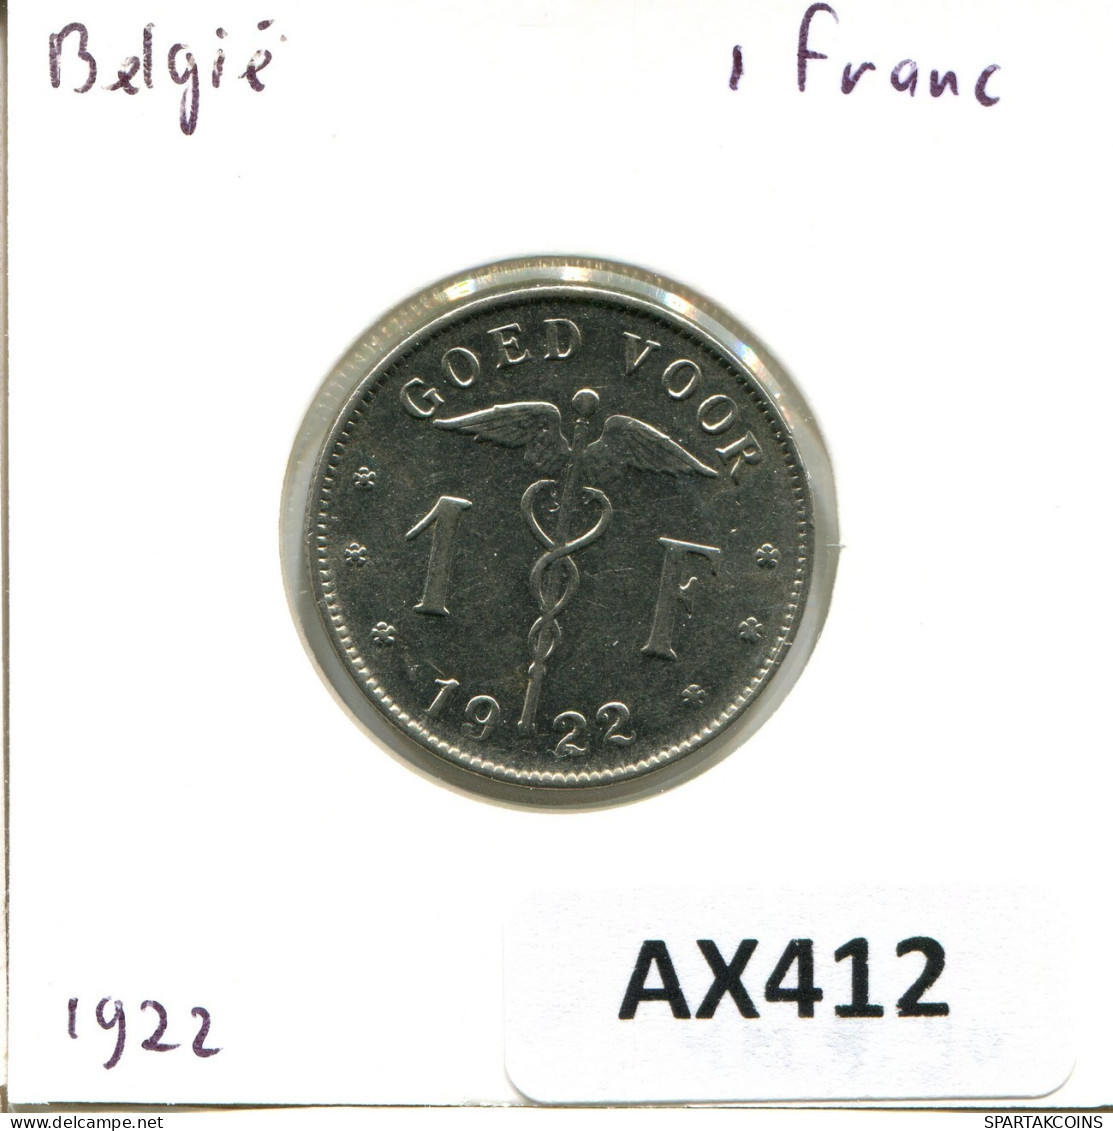 1 FRANC 1922 BELGIQUE BELGIUM Pièce DUTCH Text #AX412.F.A - 1 Franc